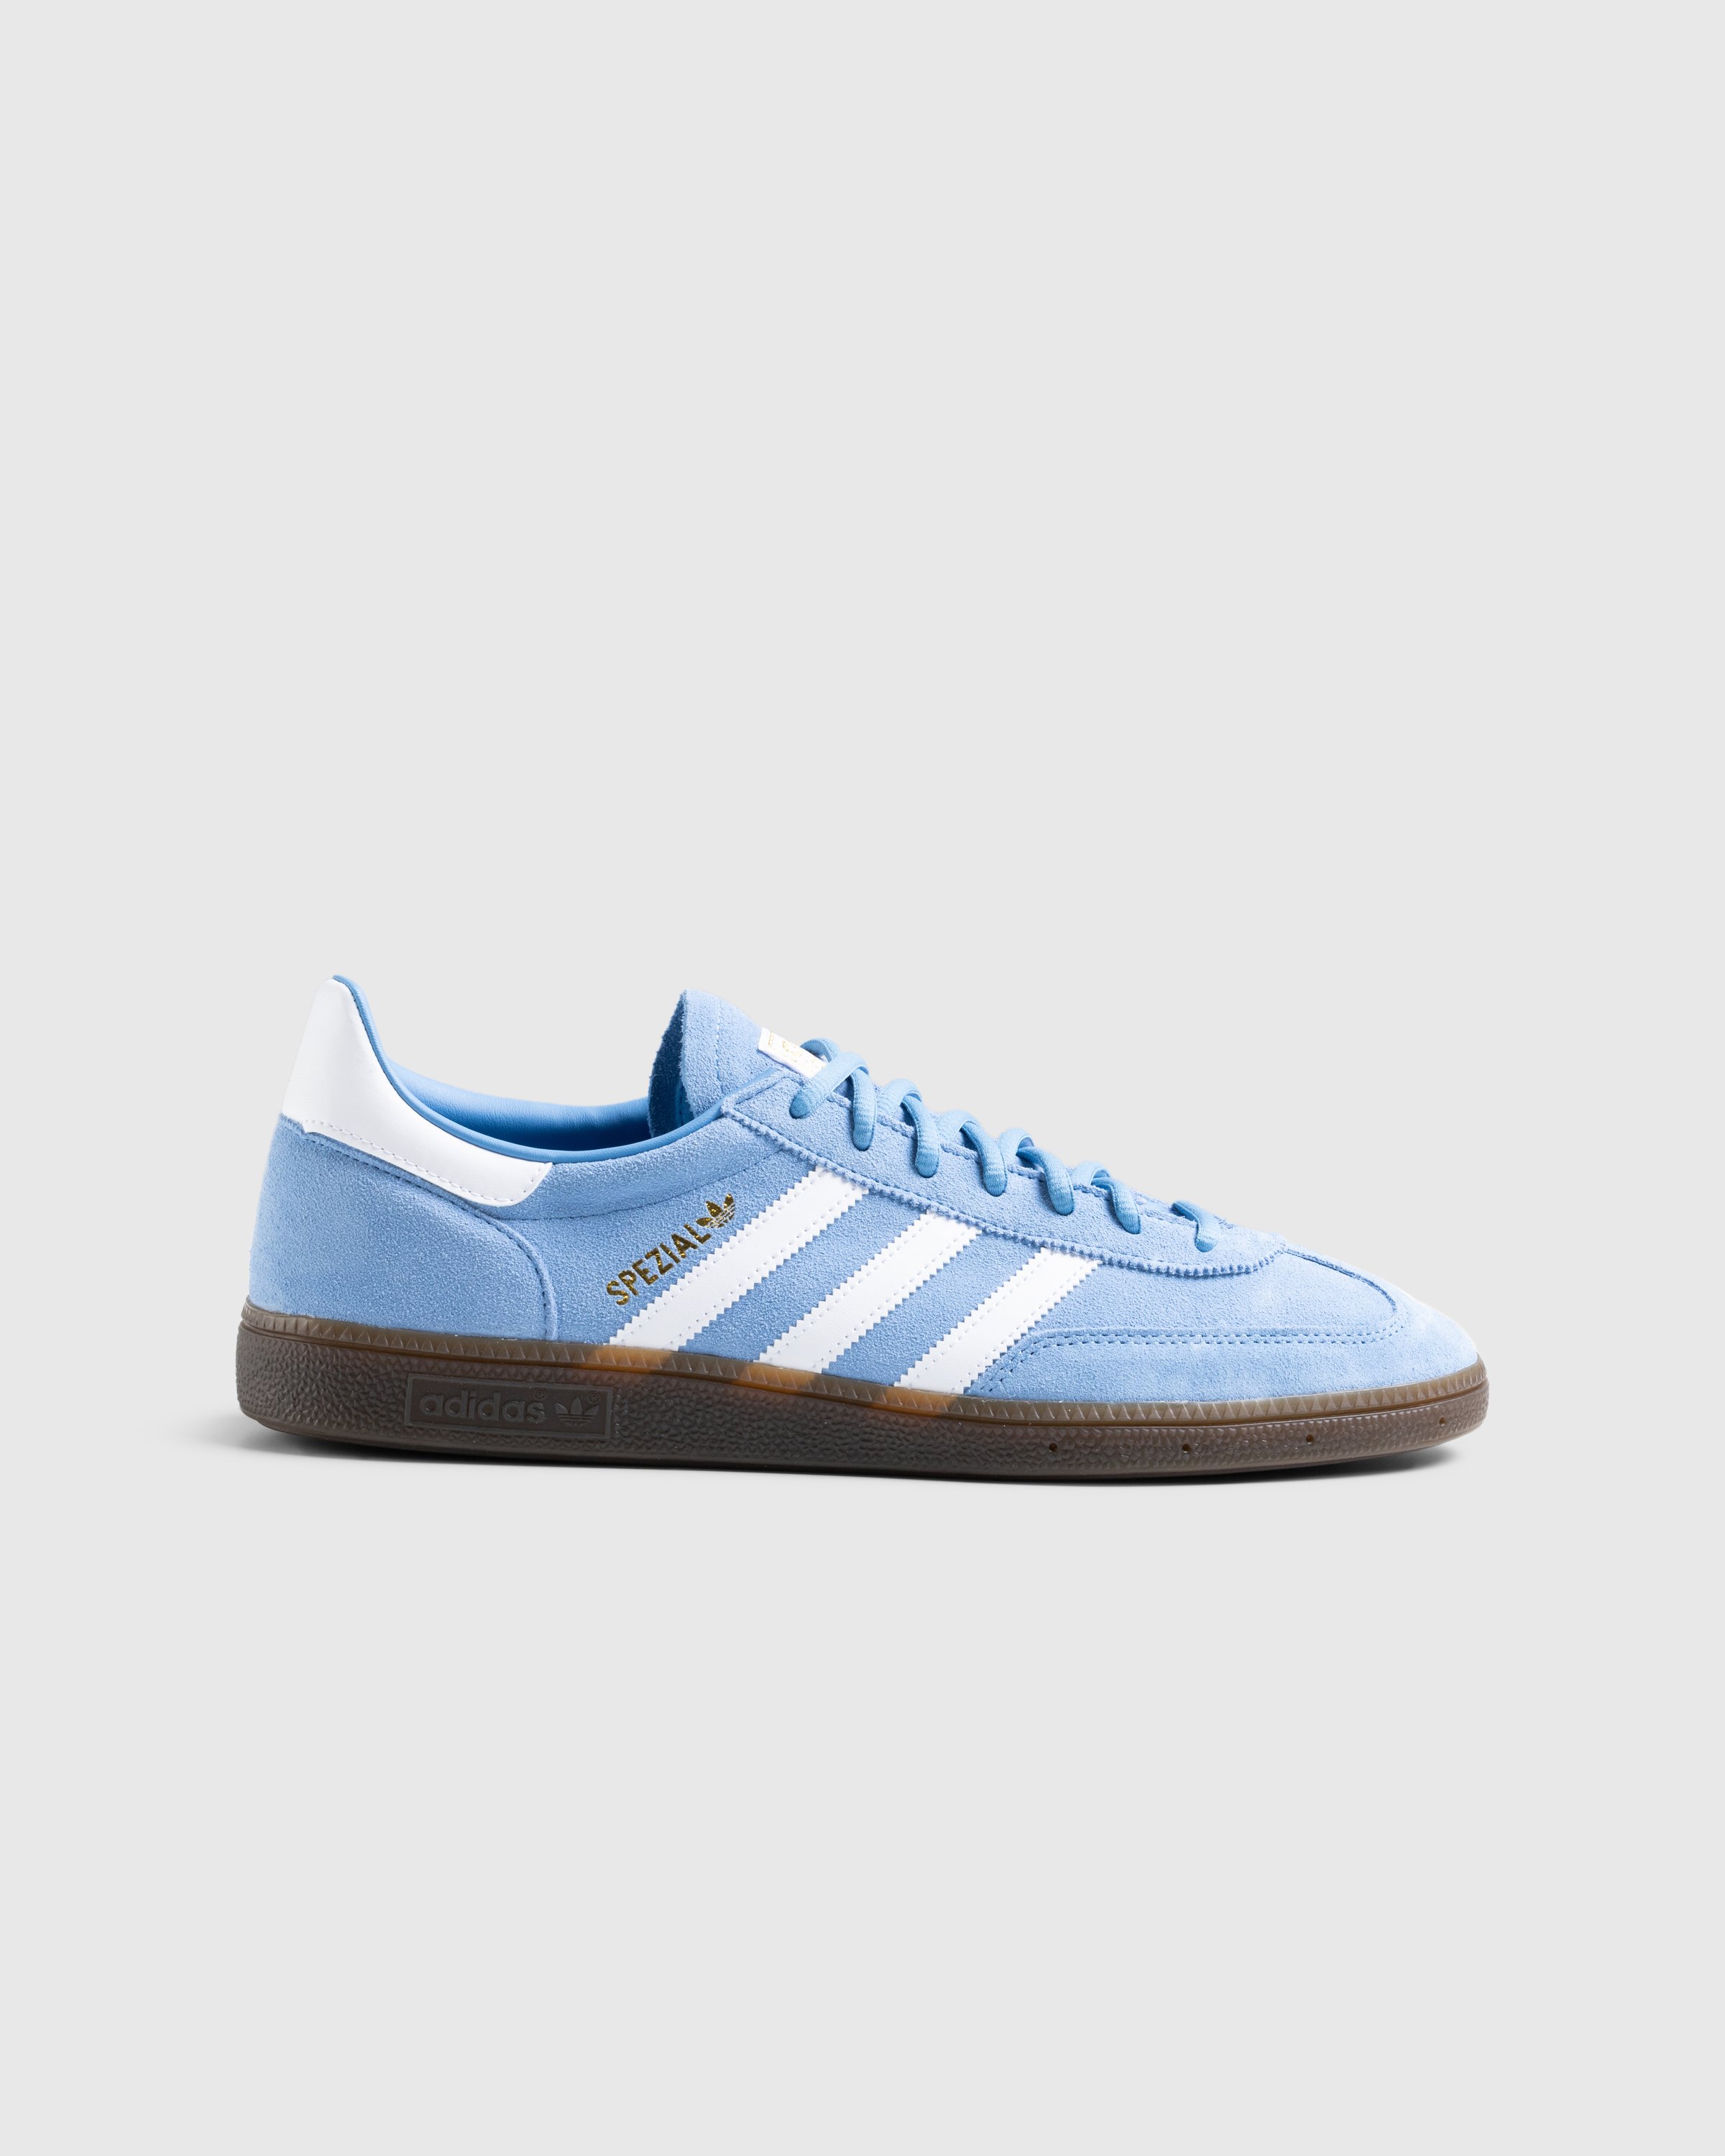 Adidas - Handball Spezial    Ltblue/Ftwwht/Gum5 - Footwear - Blue - Image 1